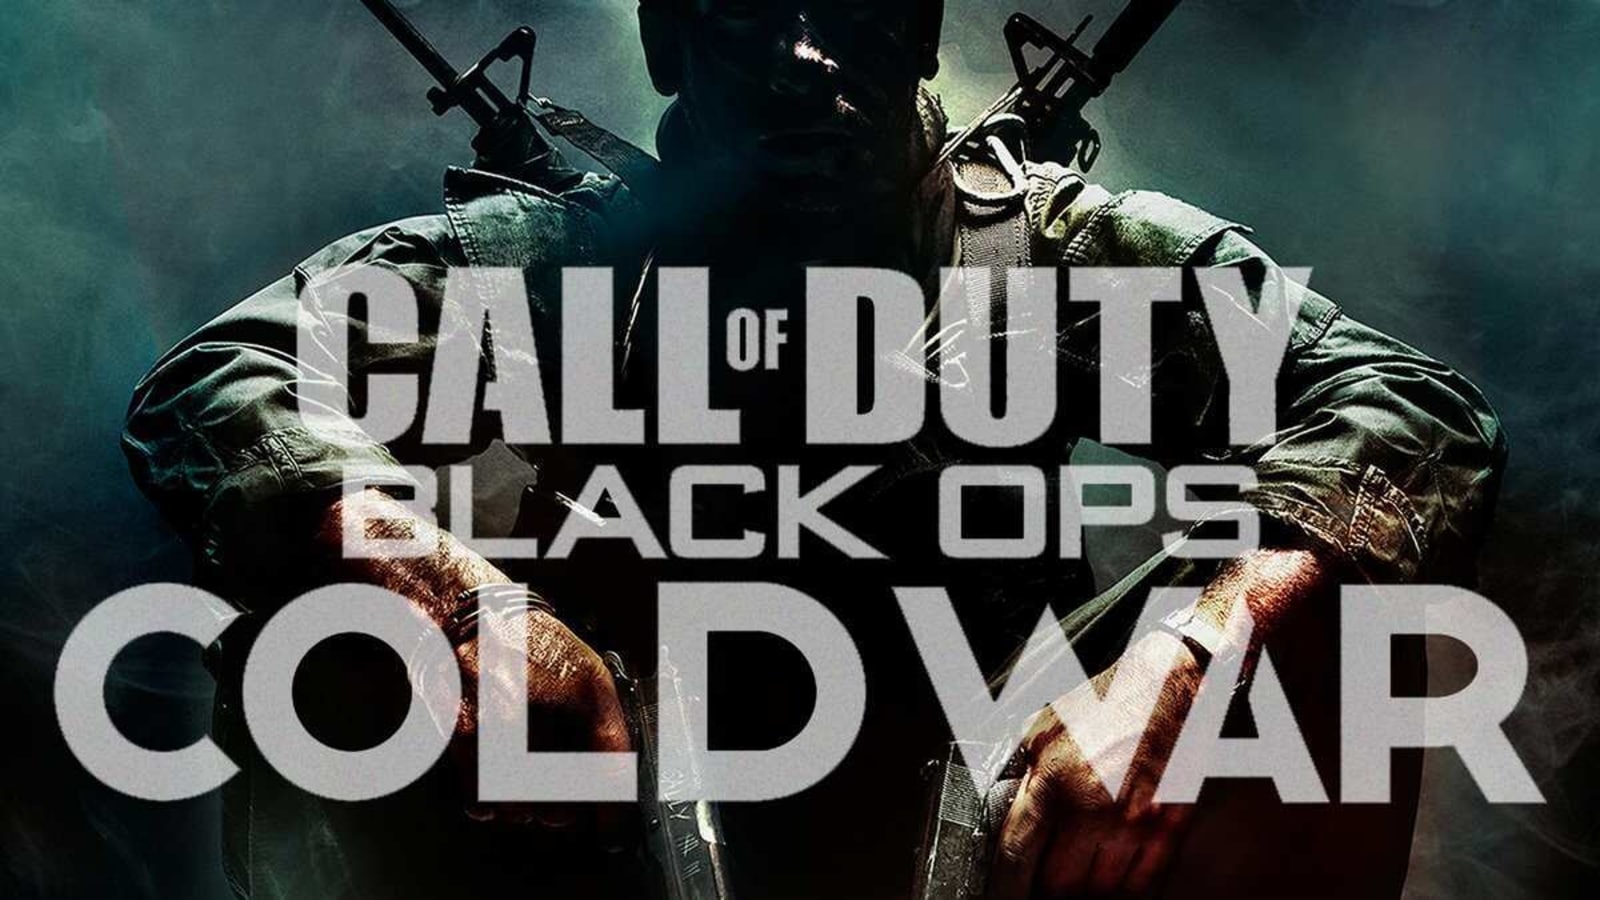 Call of Duty Black Ops: Cold War thu hút sự chú ý của các game thủ với câu chuyện dựa trên những sự kiện có thật. Được đặt trong thời kỳ Chiến tranh Lạnh, trò chơi này cung cấp cho người chơi một cái nhìn sâu sắc vào những cuộc xung đột giữa các nước và cuộc đua vũ trang. Tất cả những thử thách này cùng nhau tạo thành một cuộc phiêu lưu đầy bất ngờ và đòi hỏi sự chú ý và kỹ năng của các game thủ.